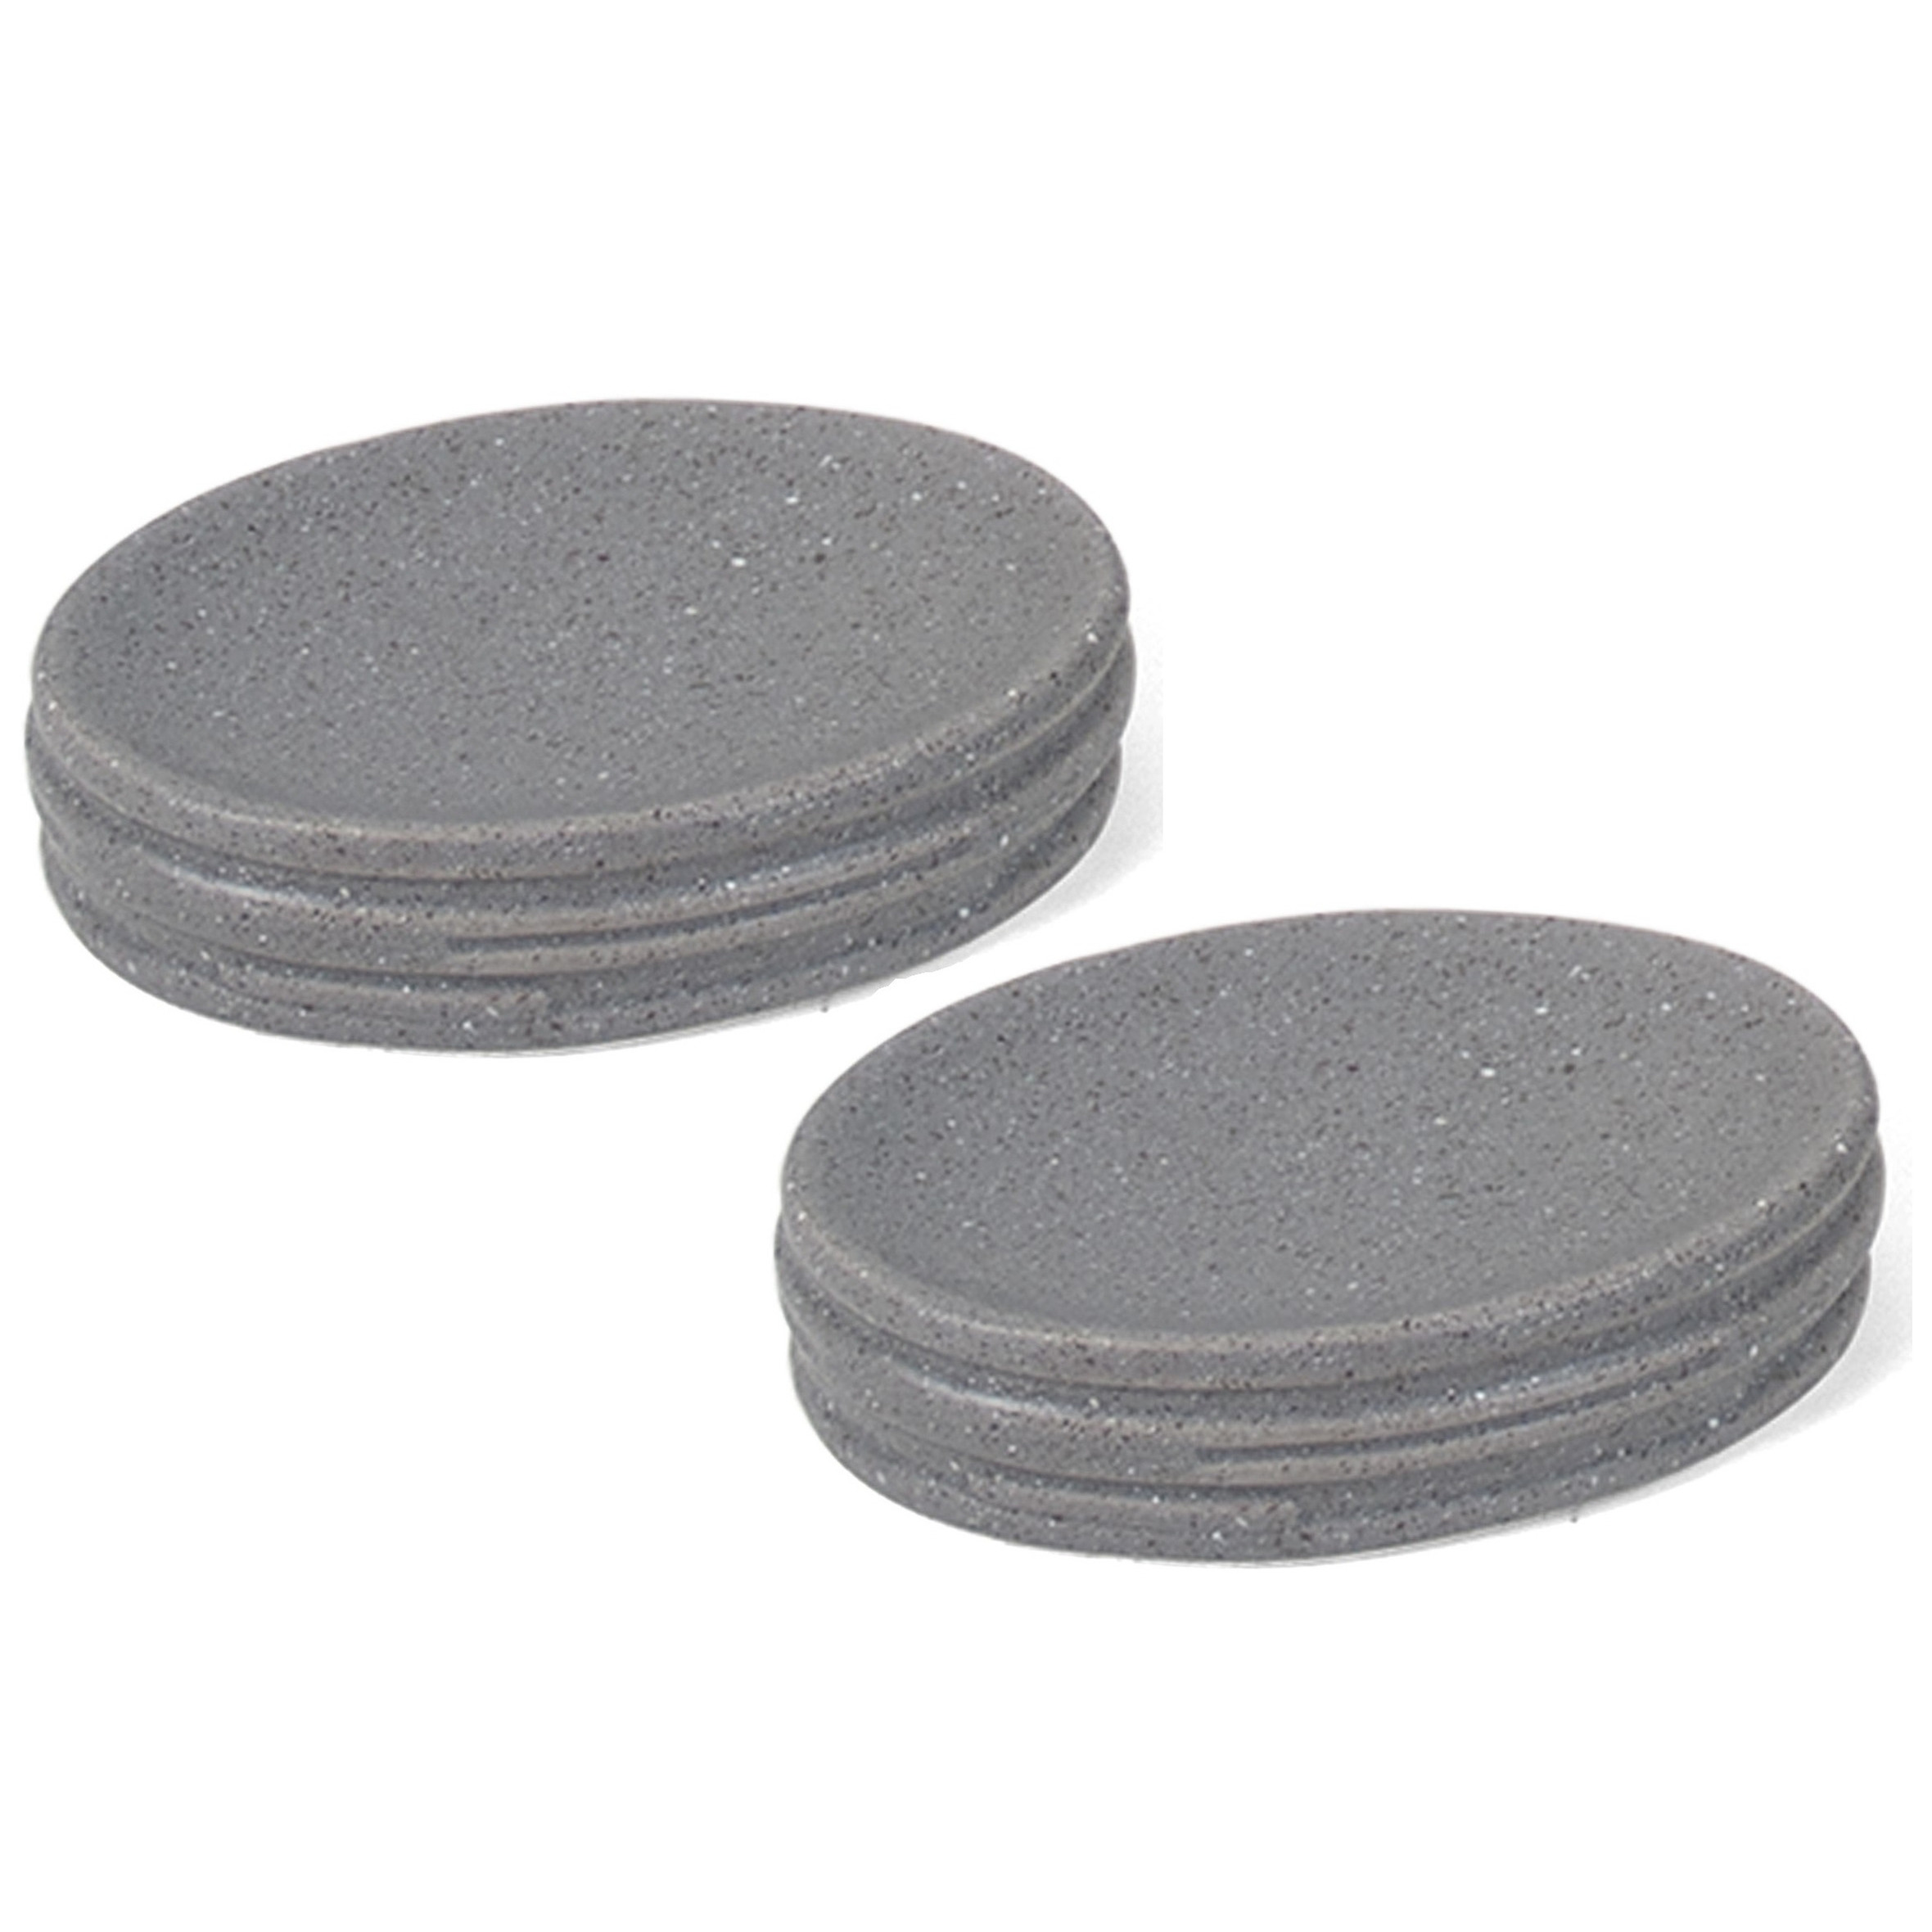 Set van 2x stuks zeephouders-zeepbakjes grijs keramiek 13 cm